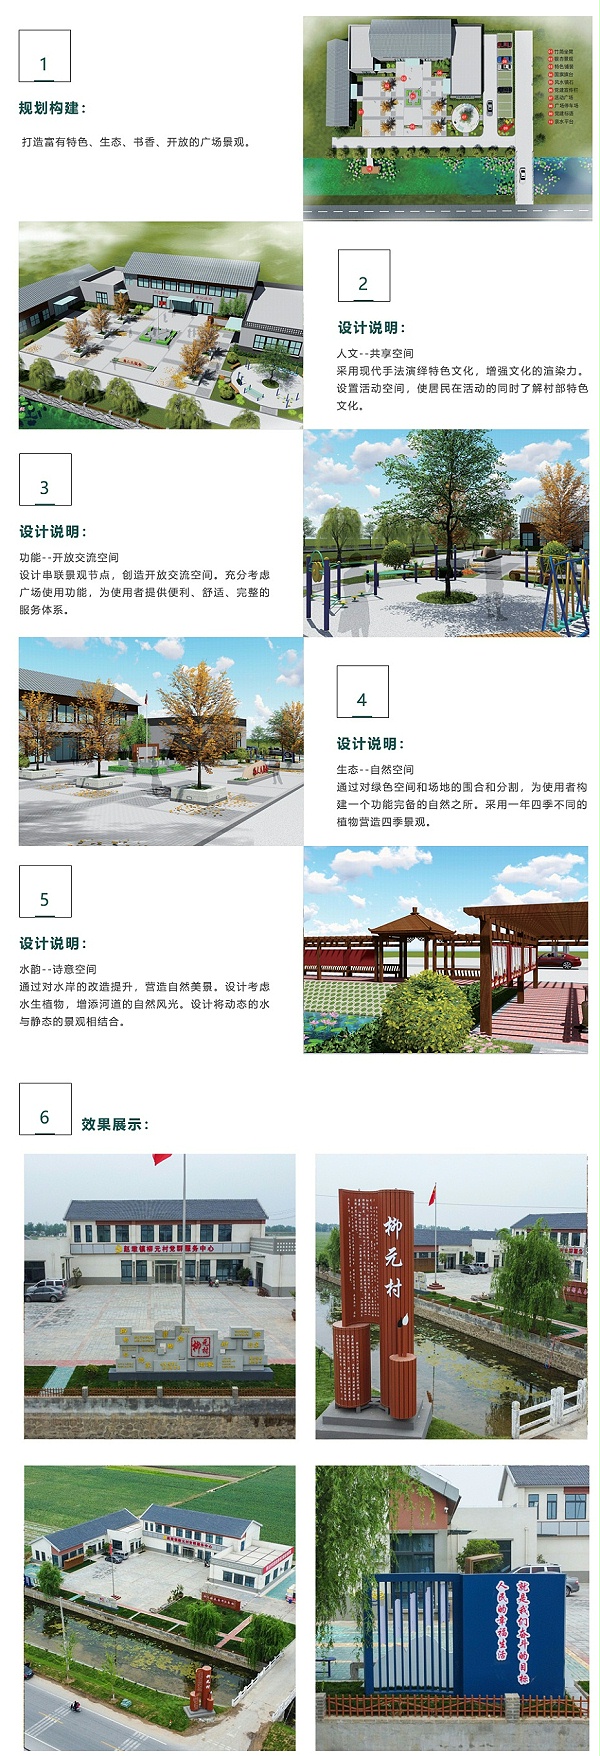 邳州市赵墩镇柳元村景观形象提升设计